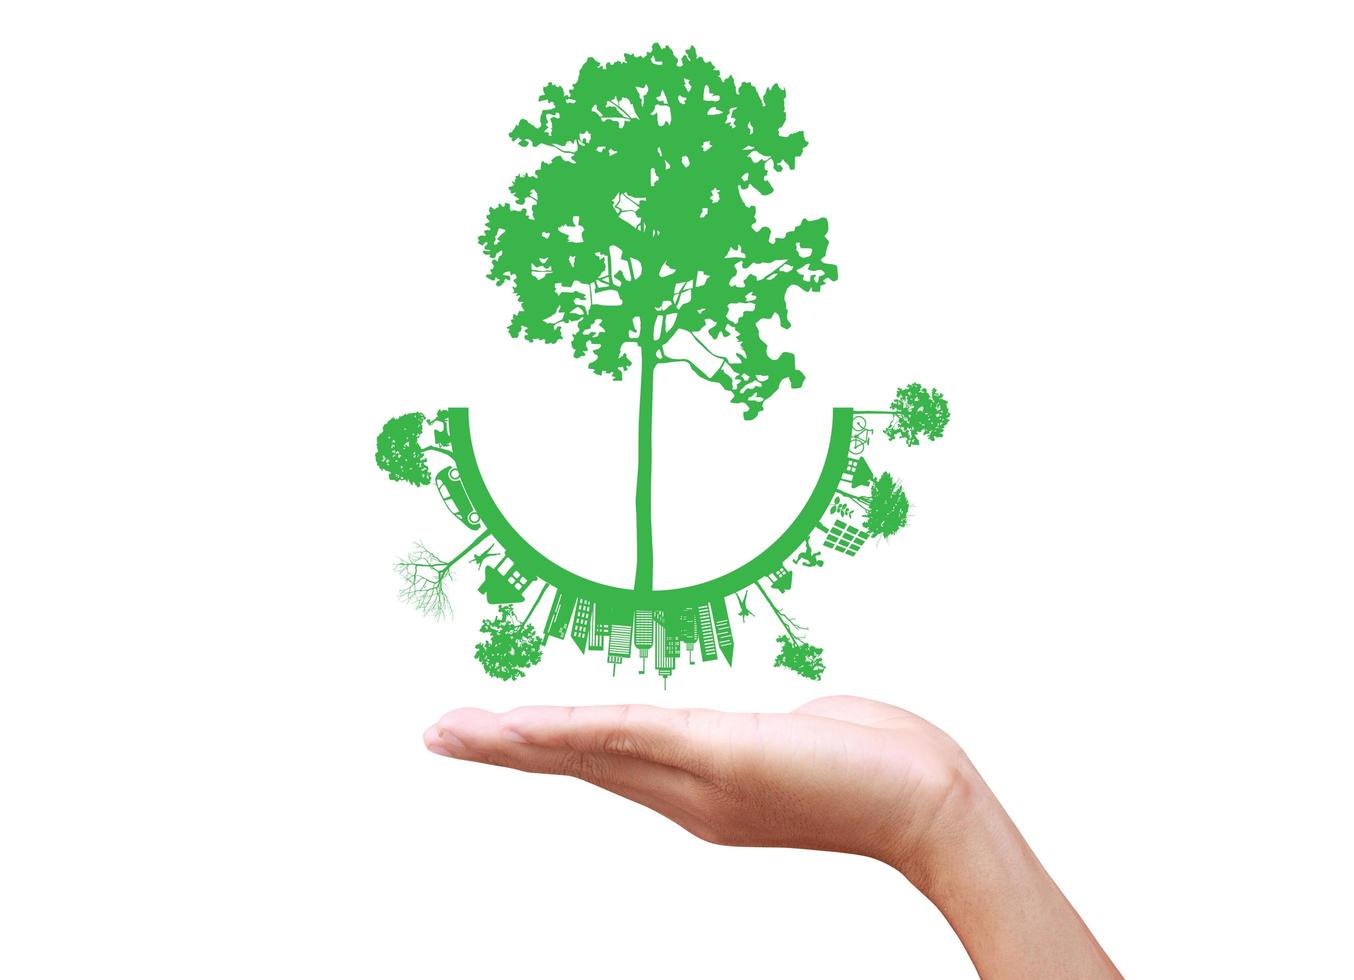 concetto verde. albero sulla terra in mano foto